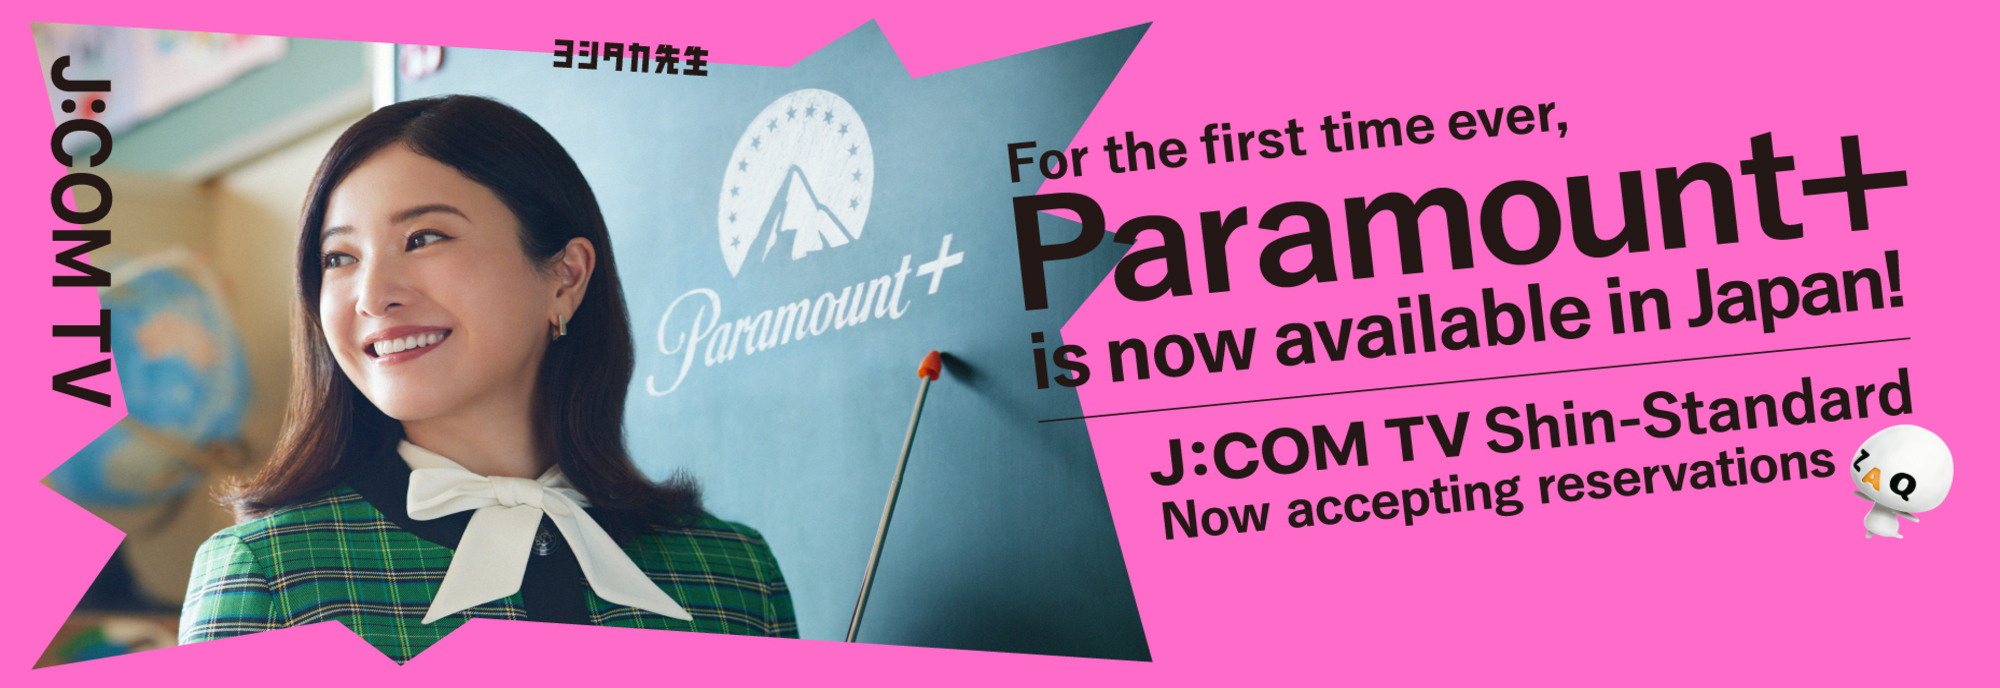 Paramount+ 일본 최초 상륙! J : COM TV 신 스탠다드 호평 접수 중